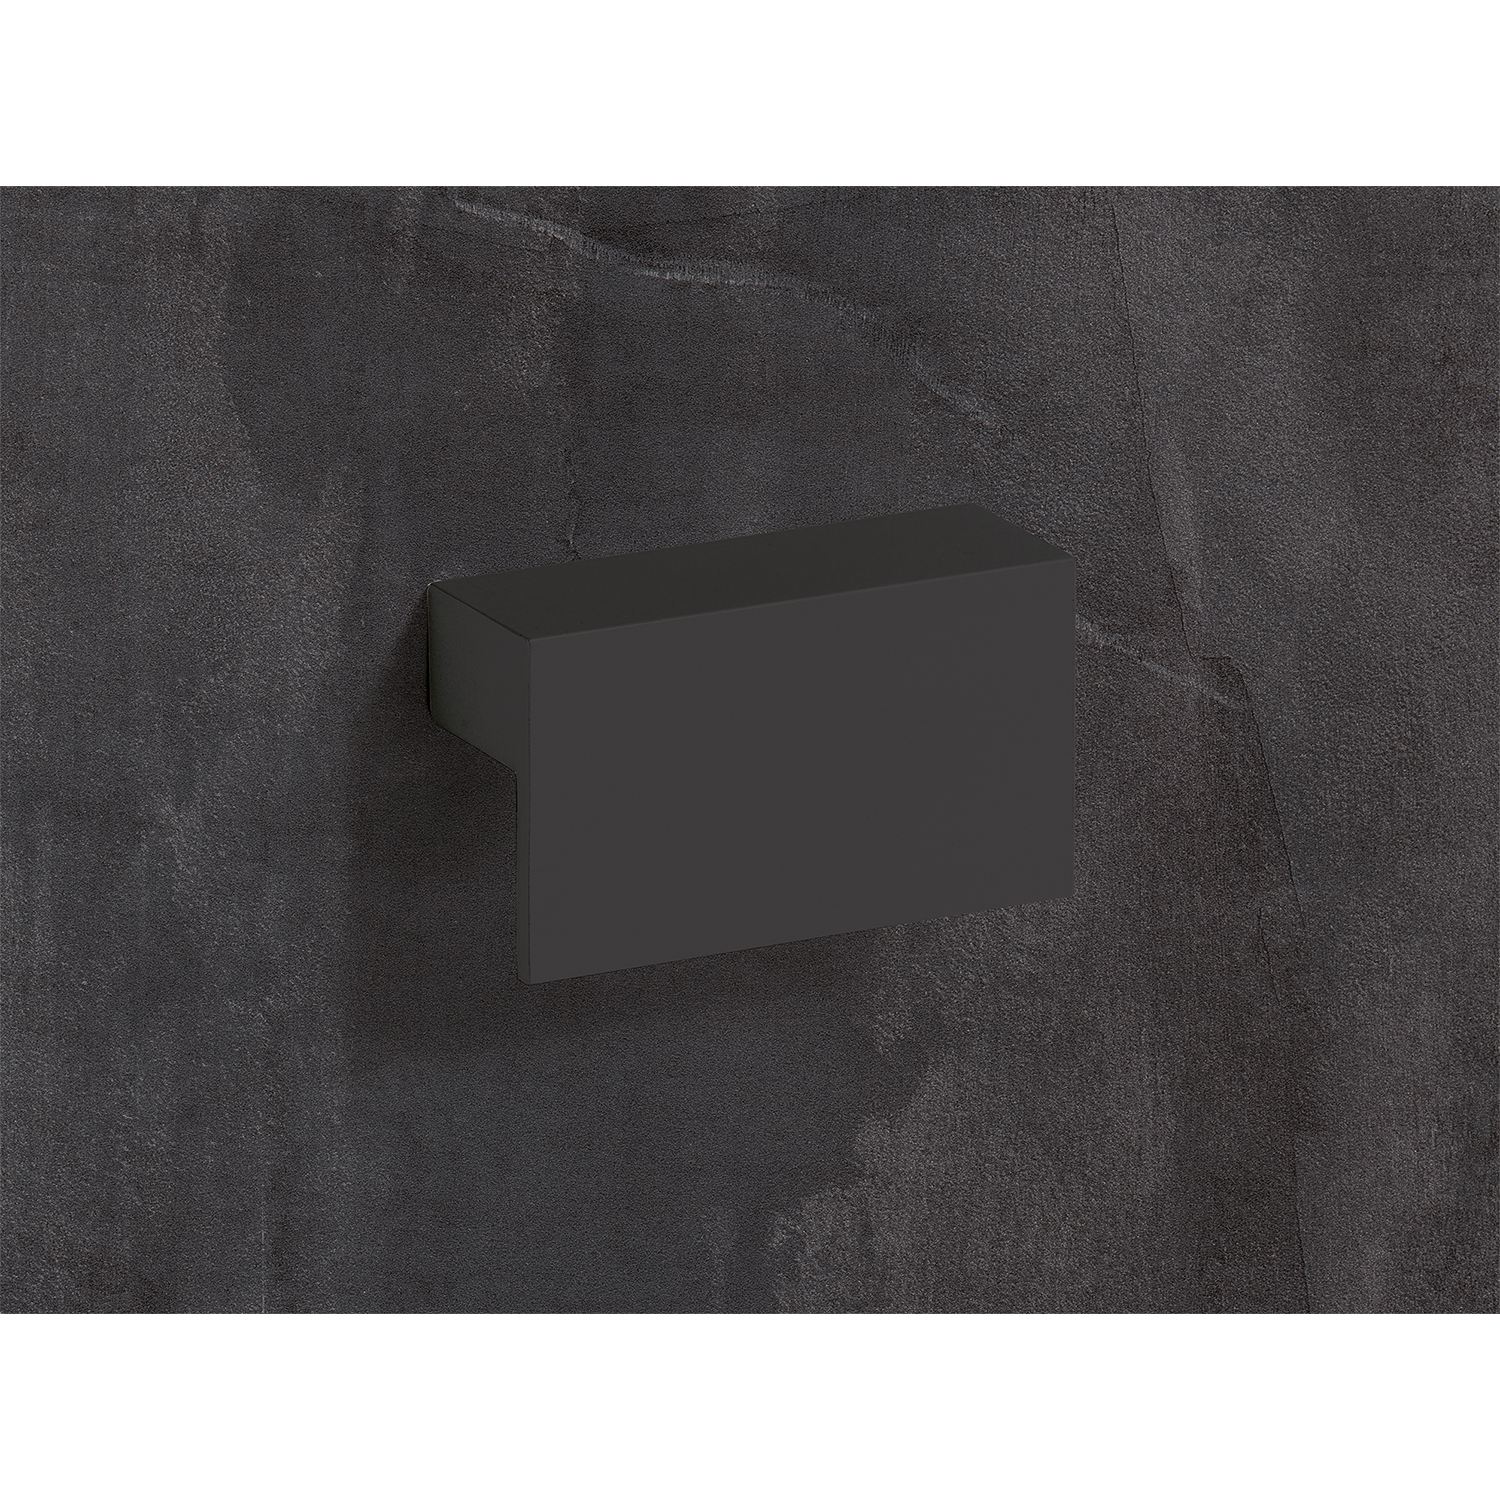 HETTICH Griff Trani, •–• 32, L 52 mm, B 26 mm, H 16 mm, Schwarz matt, 9265949